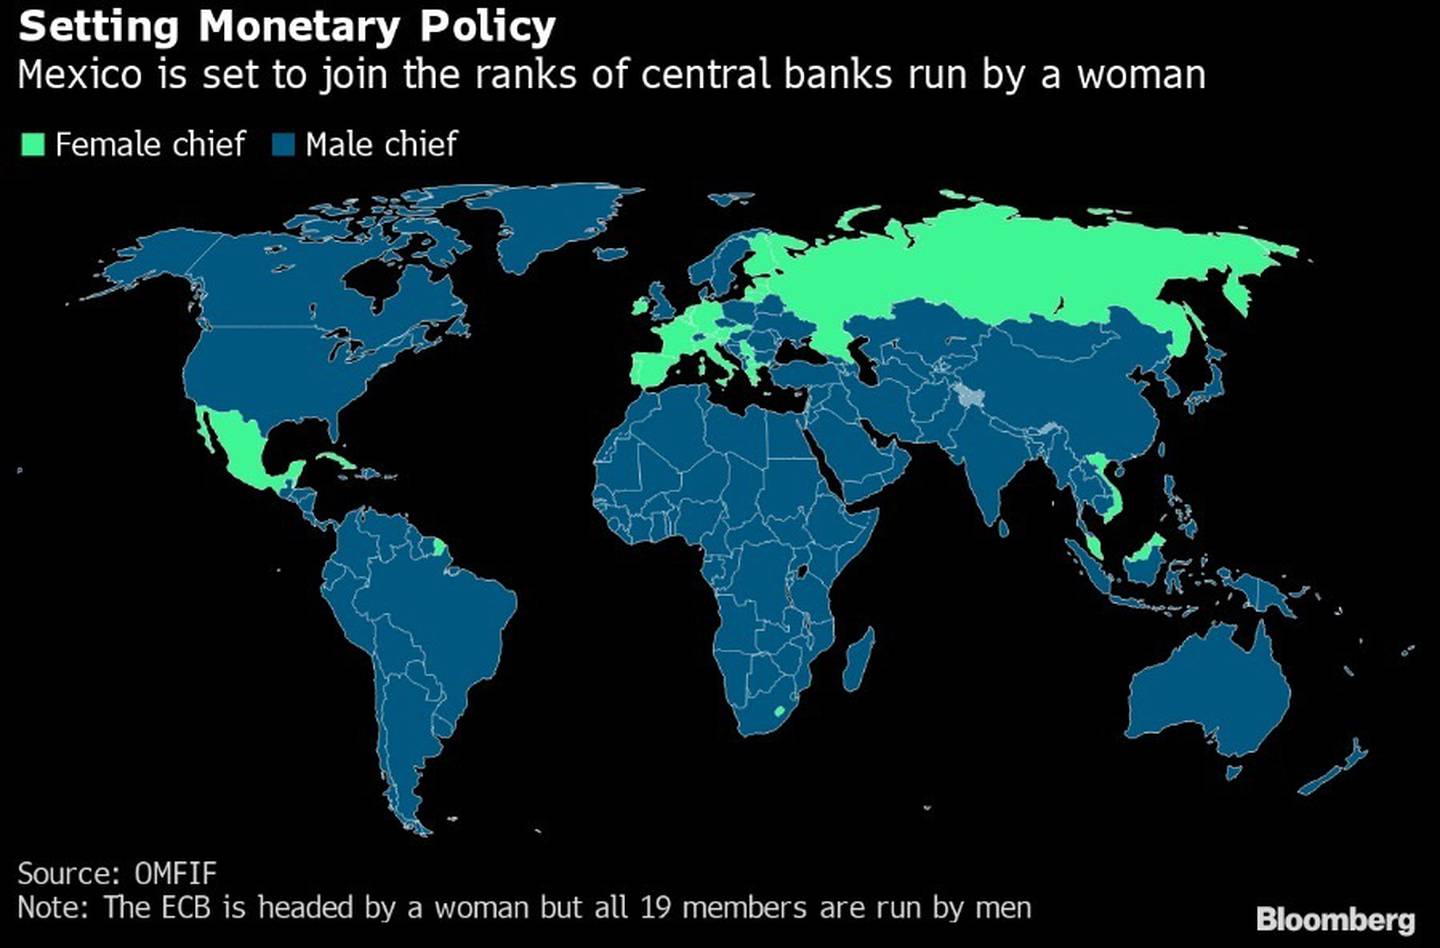 A nivel global, alrededor de una docena de bancos centrales son liderados por una mujer.